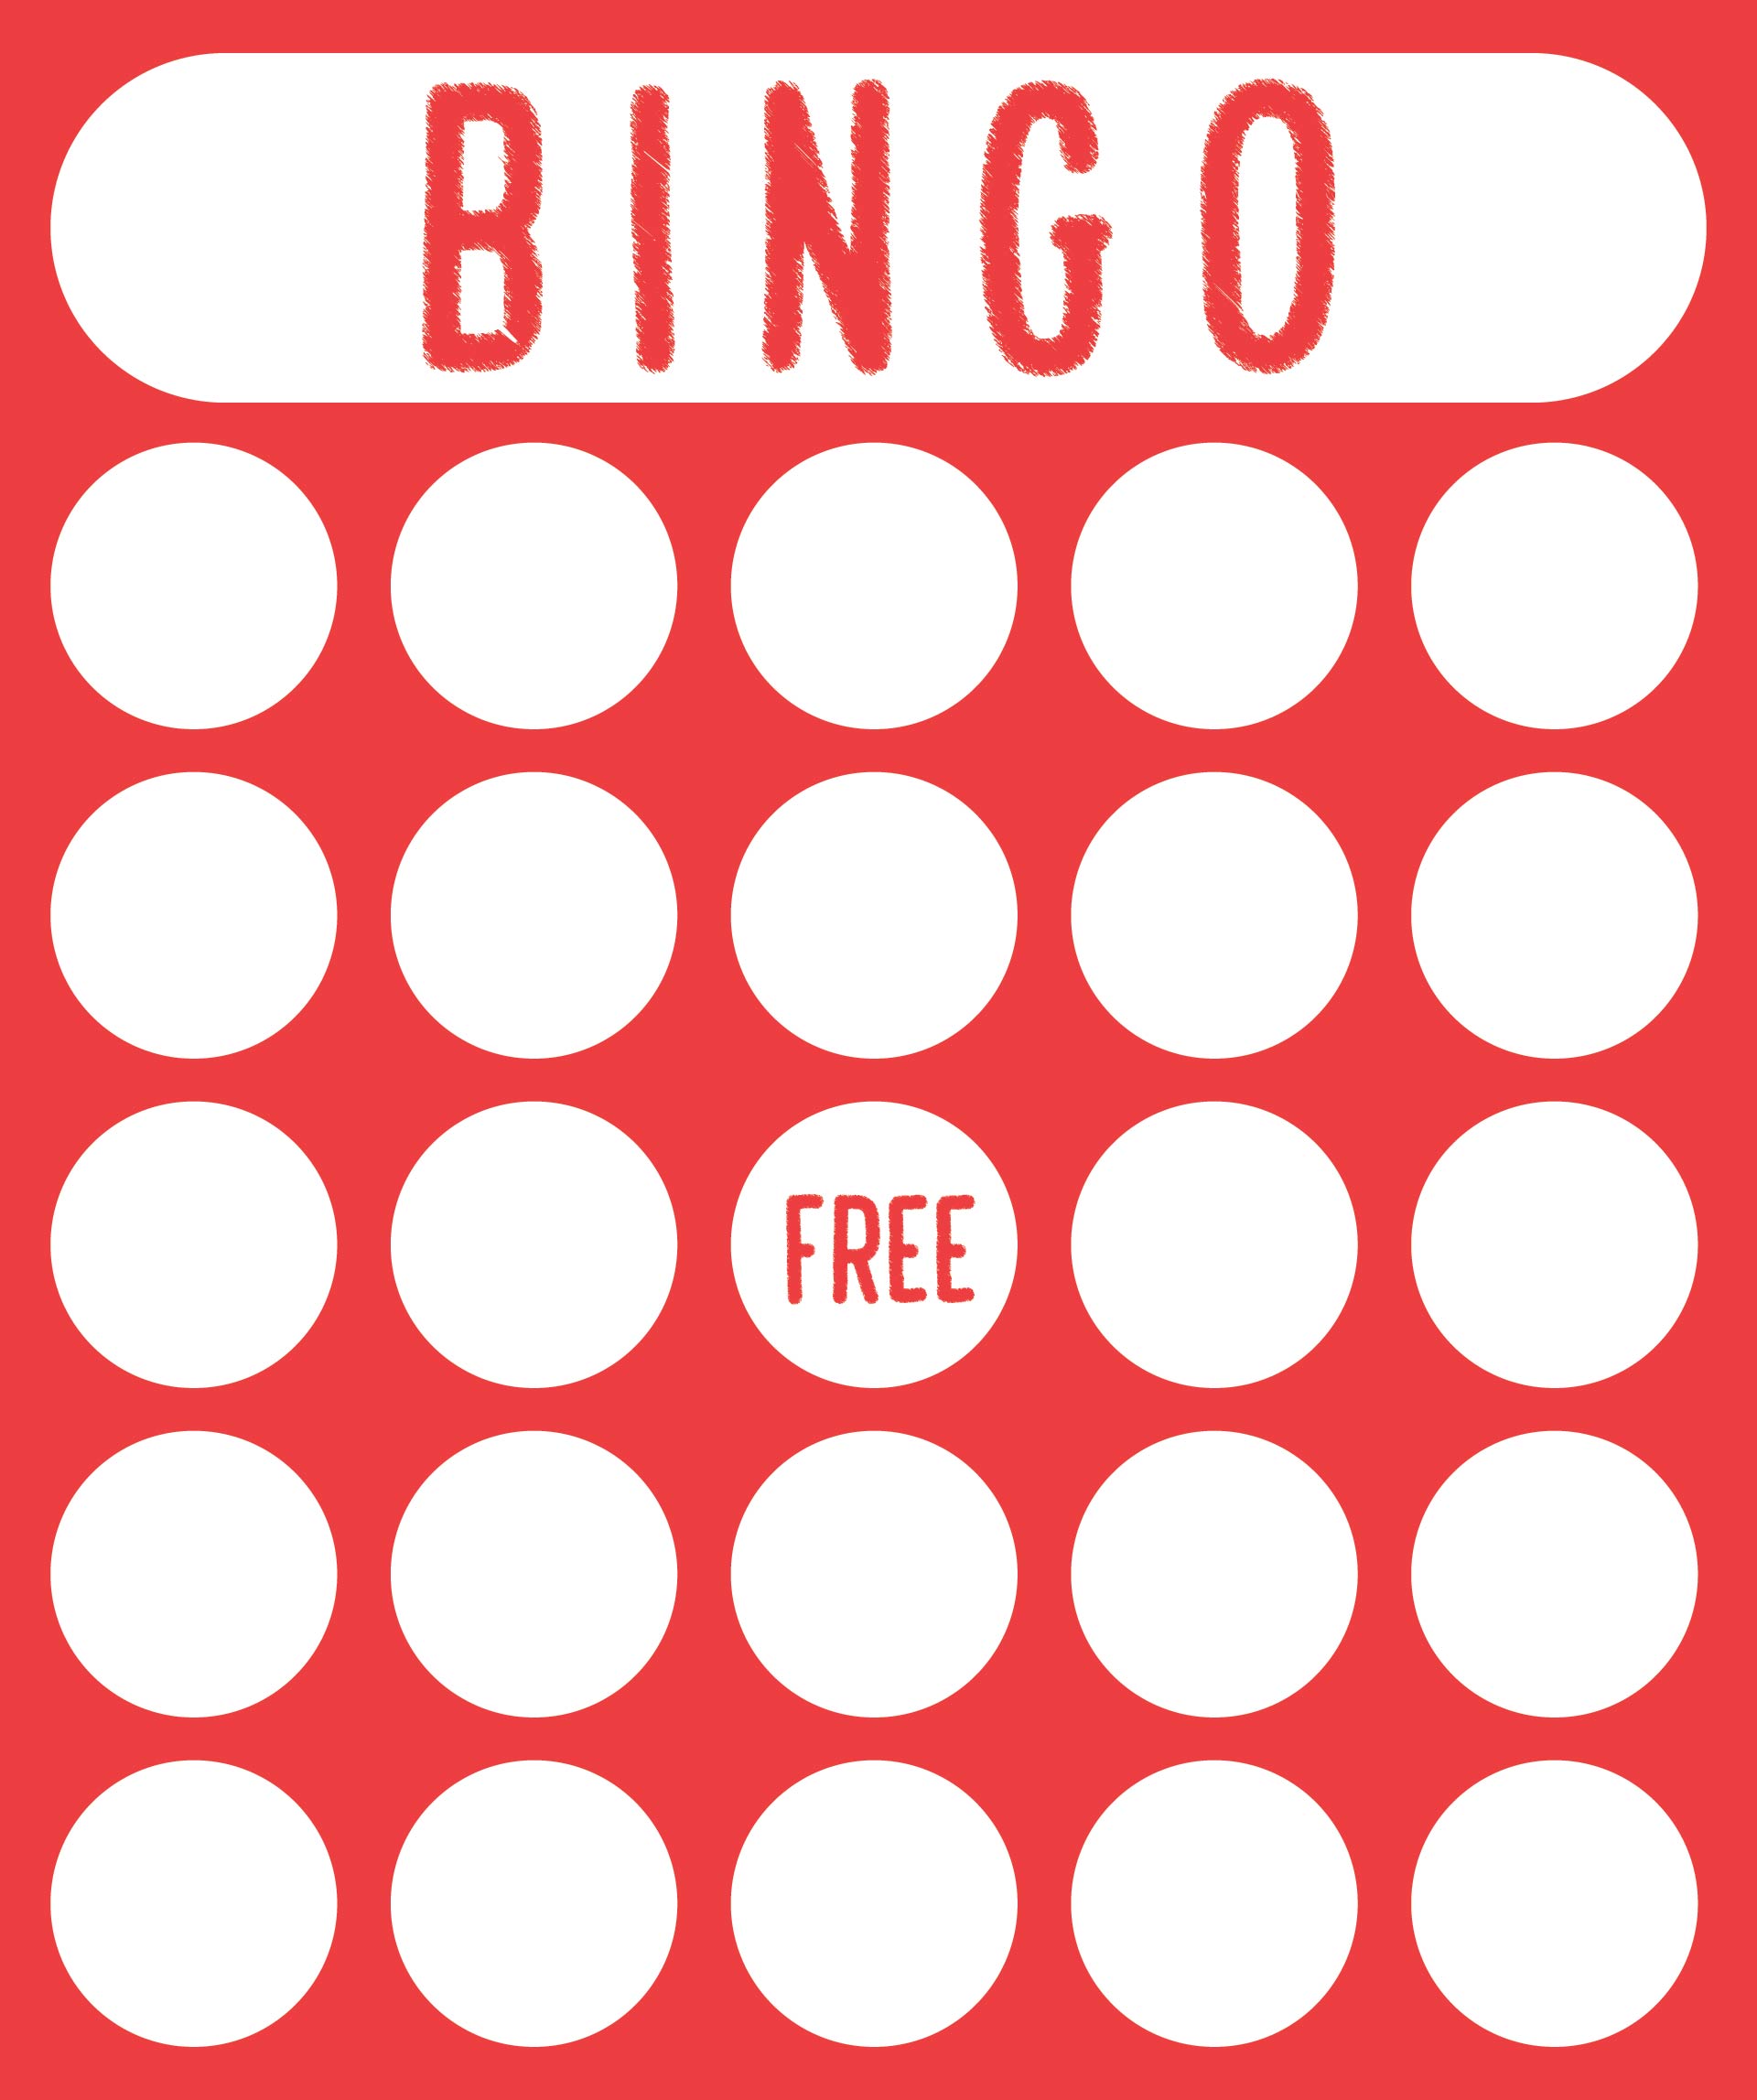 11 Best Images of Excel Bingo Card Printable Template - Printable Blank ...